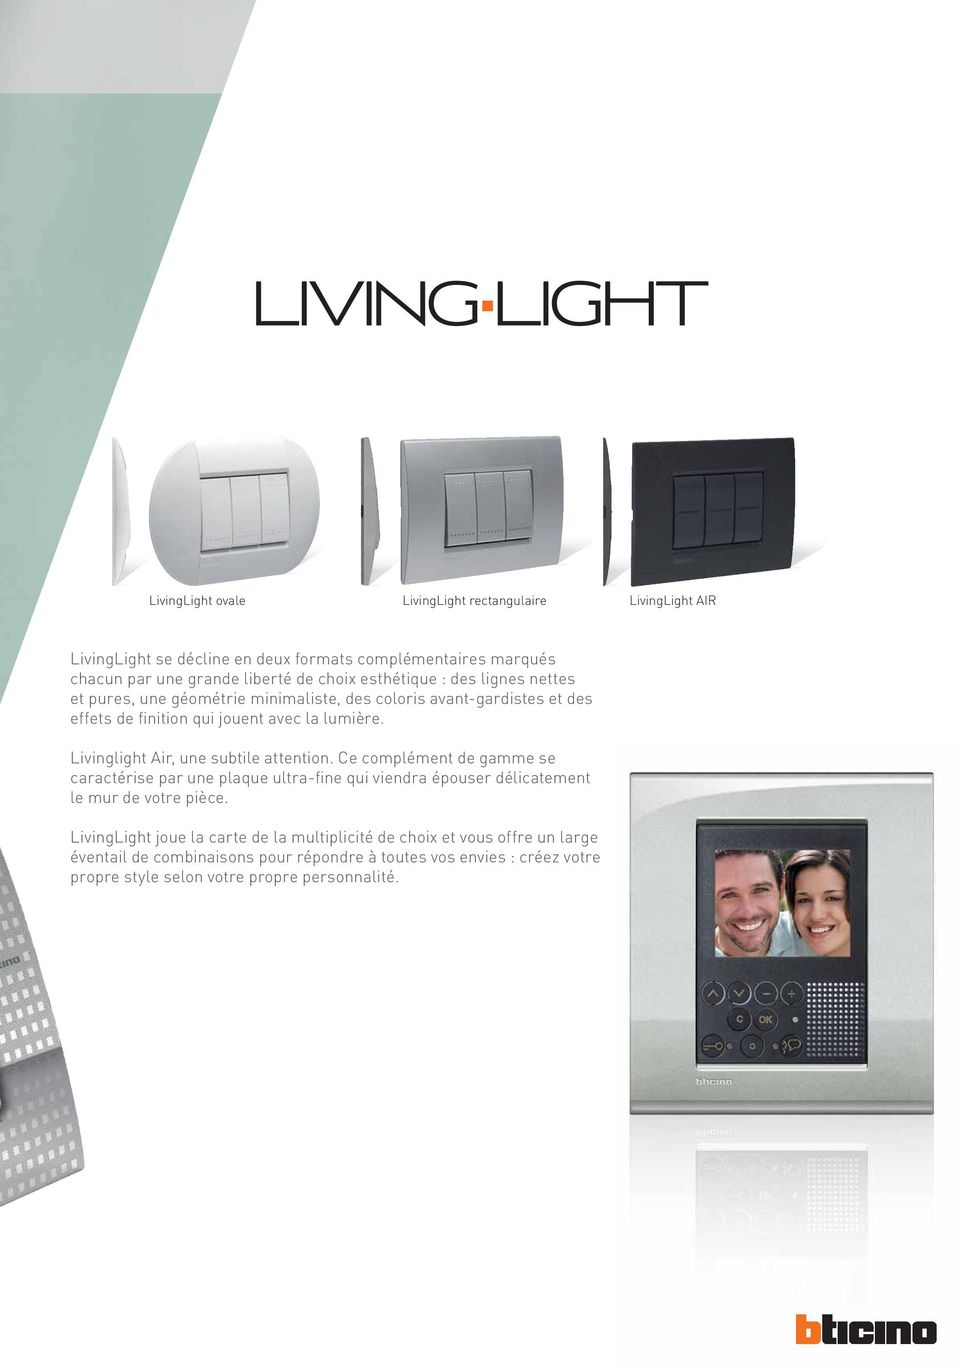 Livinglight Air, une subtile attention. Ce complément de gamme se caractérise par une plaque ultra-fine qui viendra épouser délicatement le mur de votre pièce.